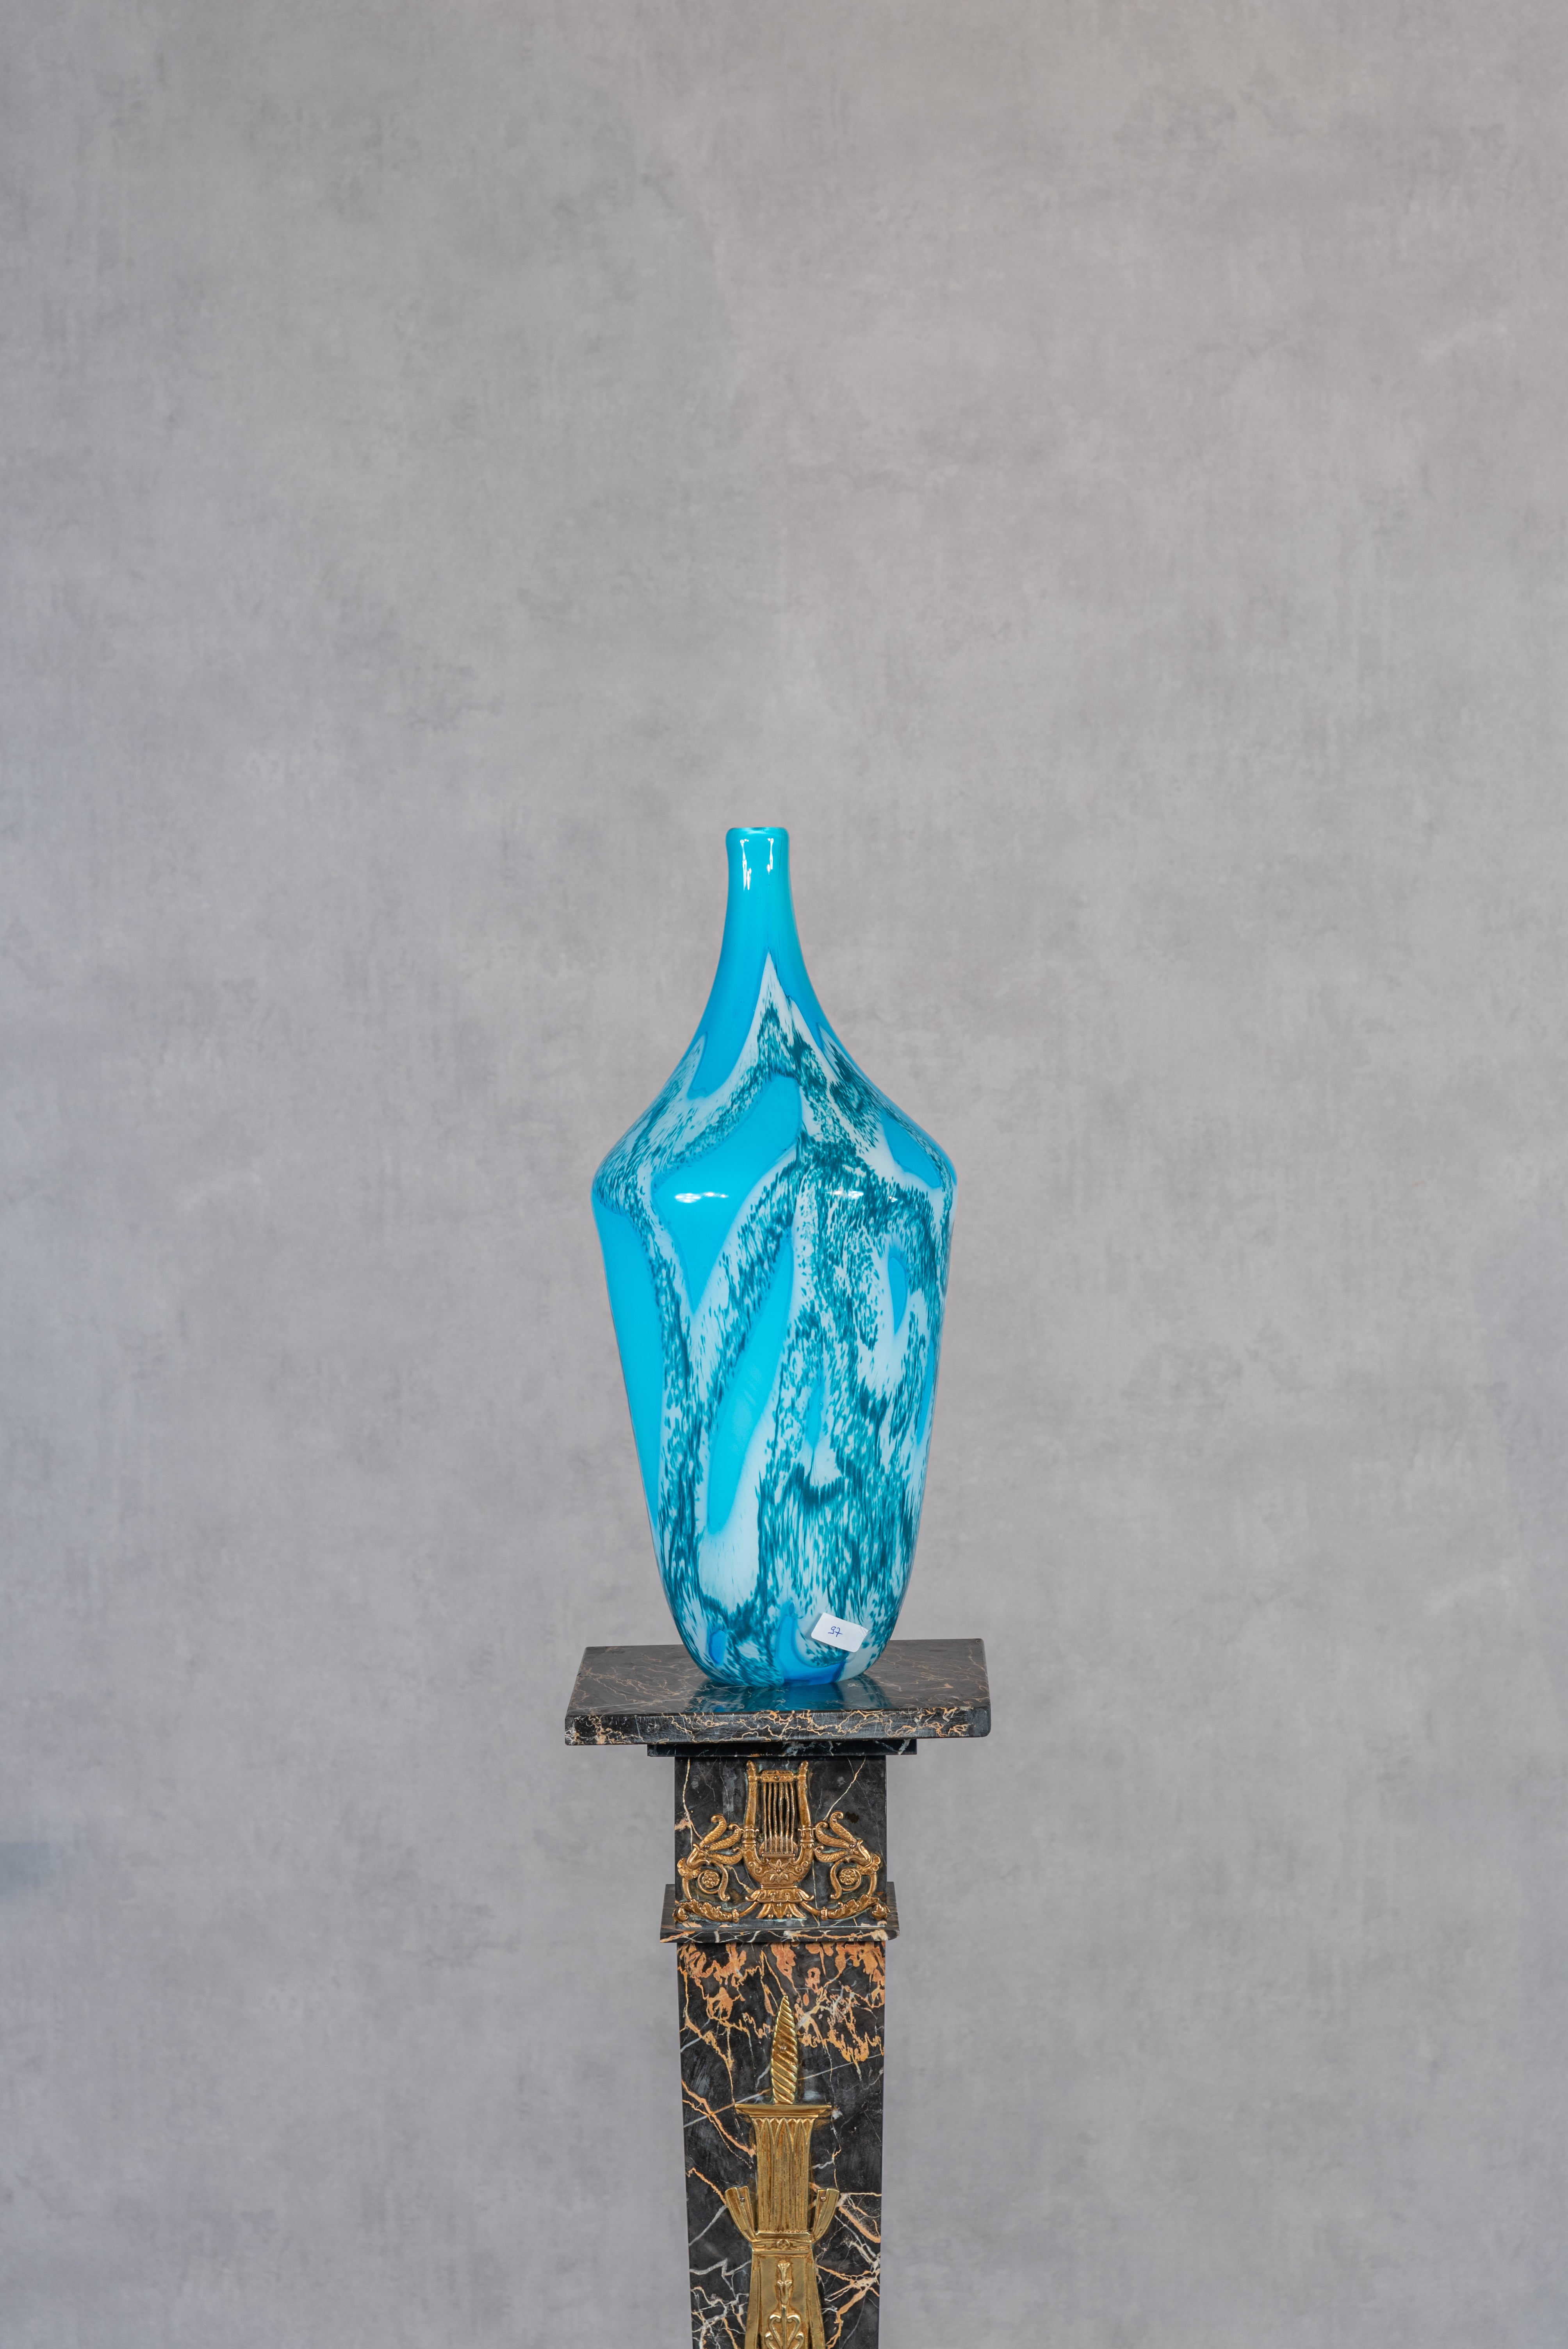 Ce grand vase de Clichy du XXe siècle est une œuvre d'art captivante qui met en valeur la beauté et le savoir-faire de la verrerie de Clichy. Fabriqué au XXe siècle, il incarne l'élégance et le raffinement qui font la renommée de Clichy. Le vase est